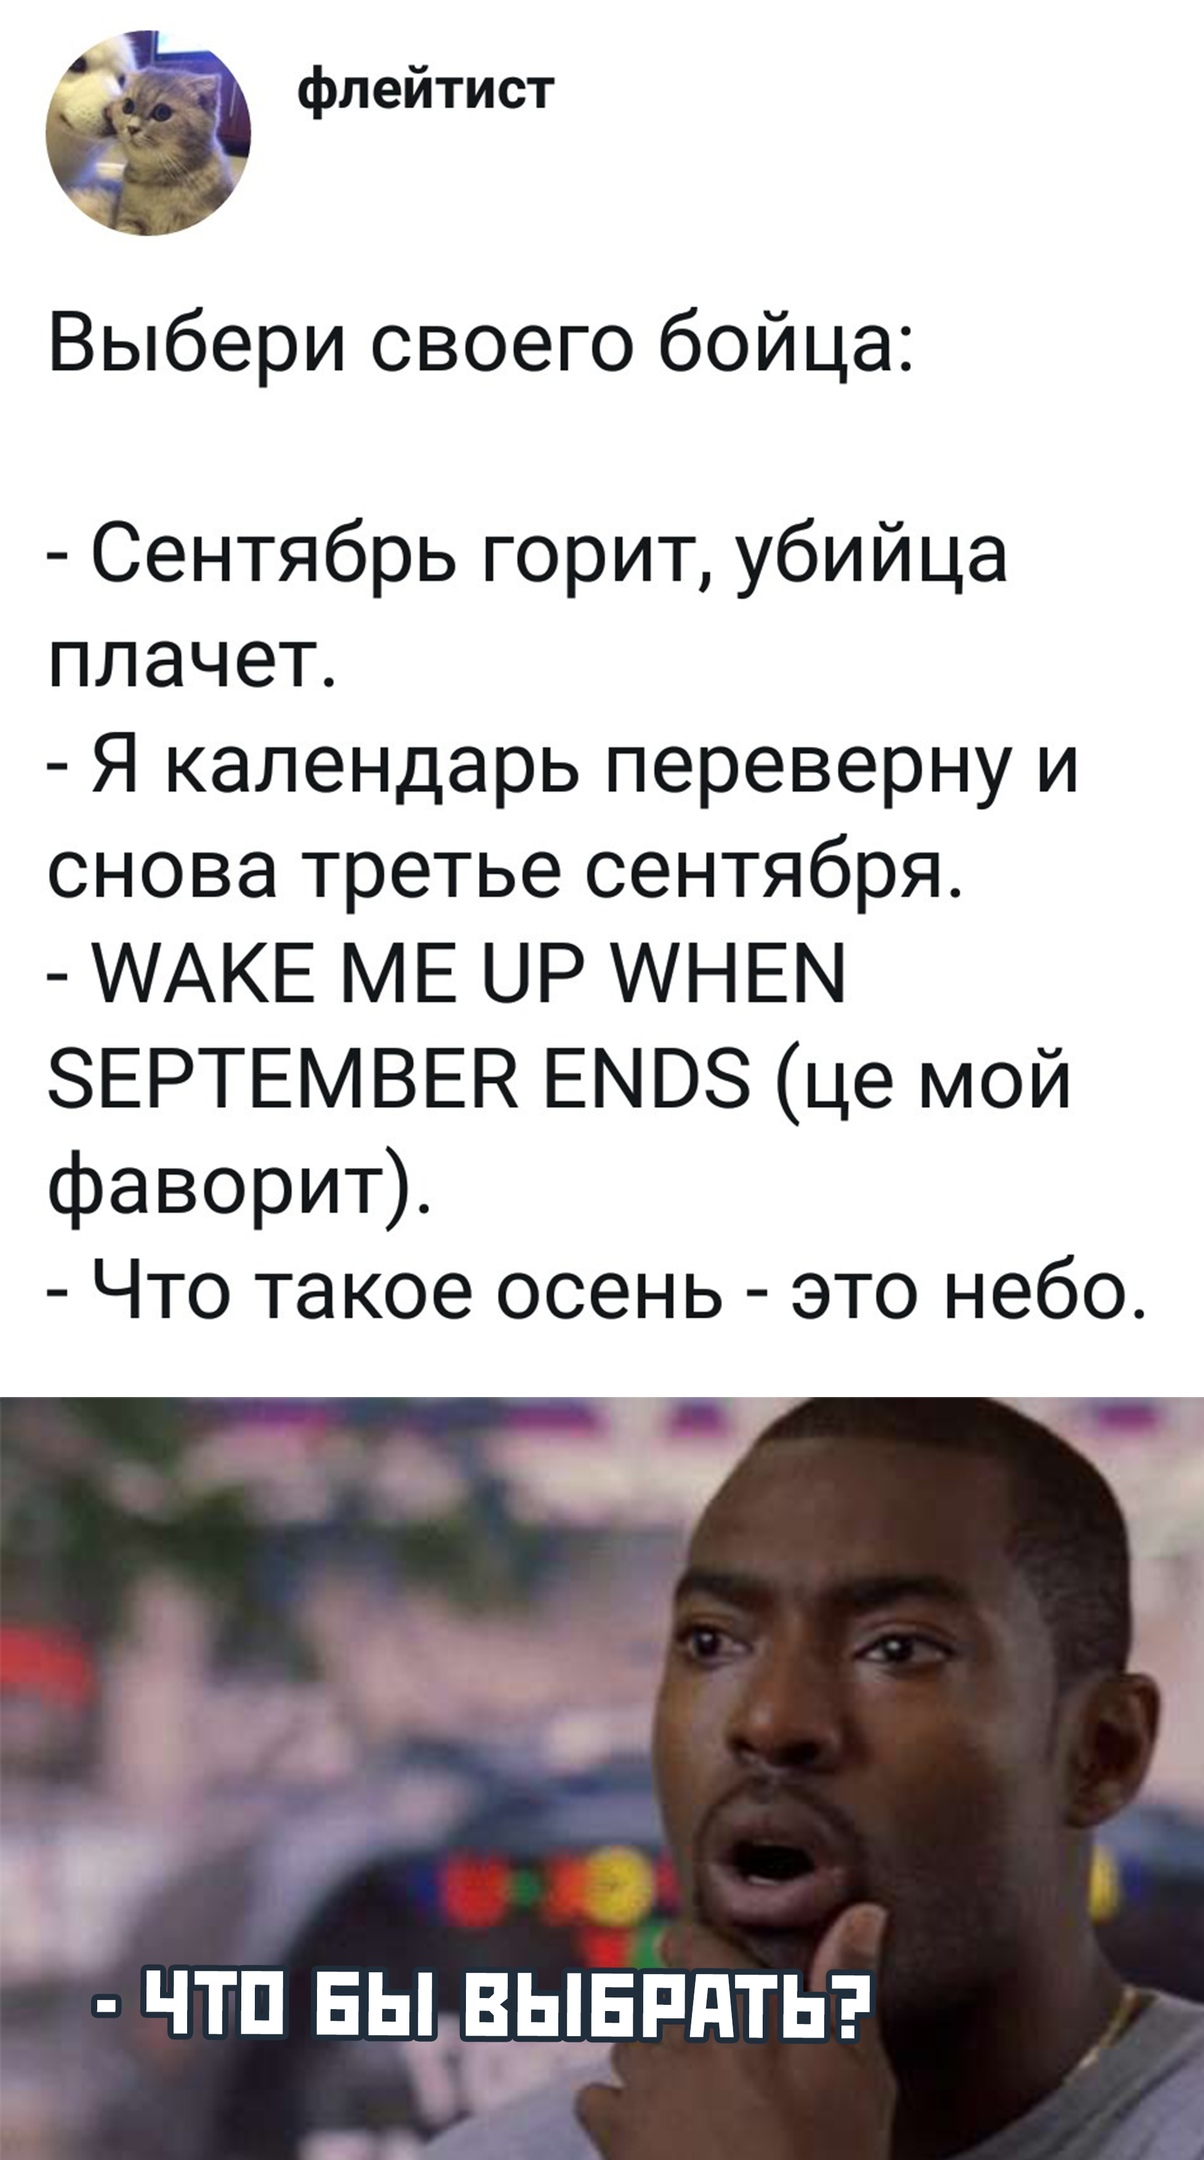 Шутки и мемы про "3 сентября" и Михаила Шуфутинского. Переверни свой календарь